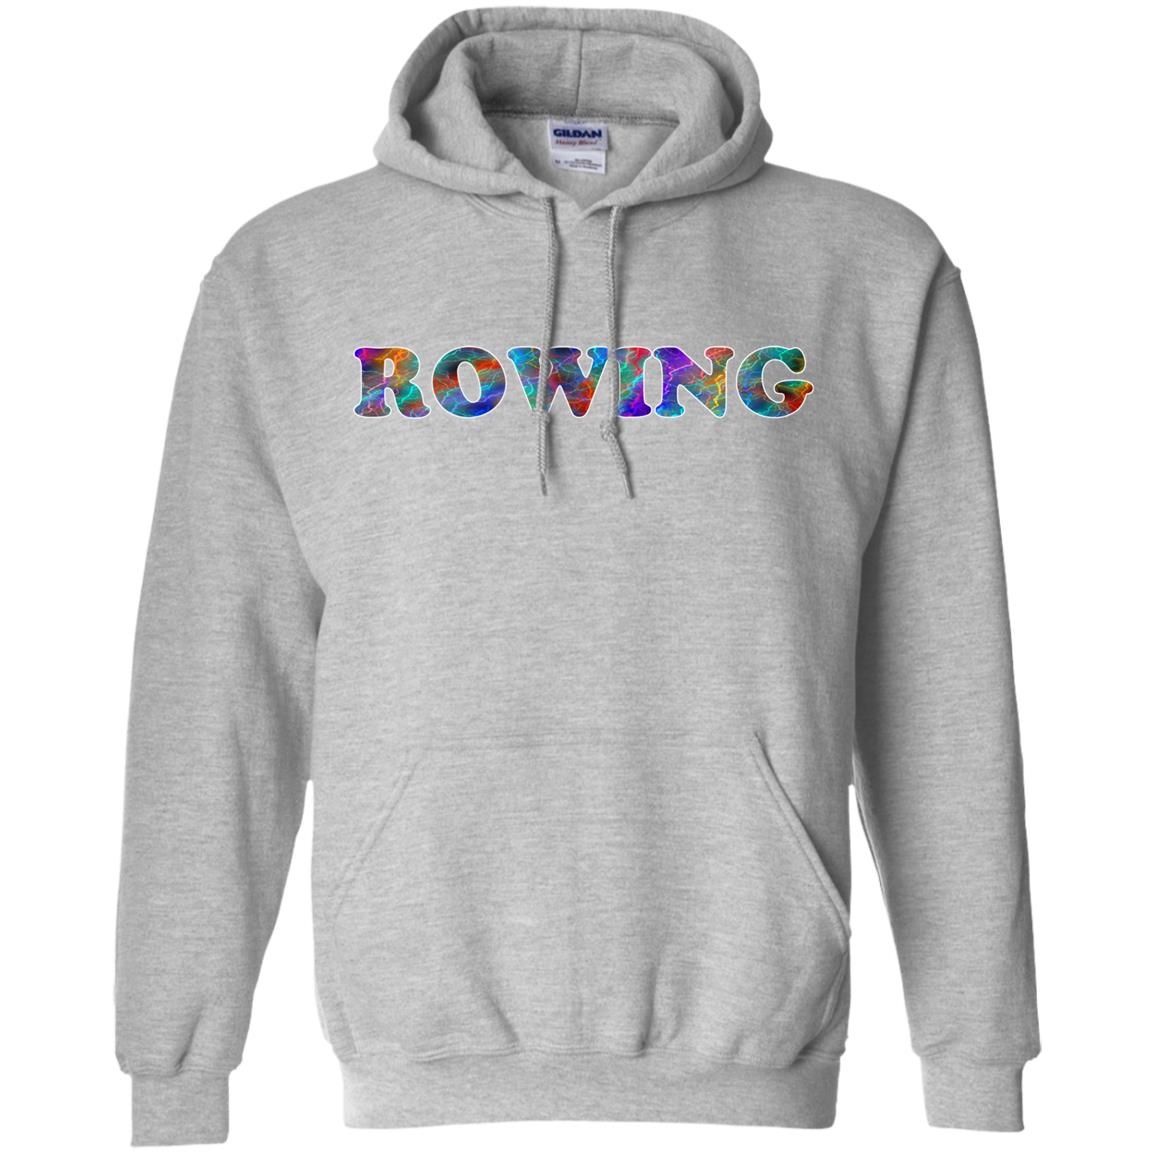 Rowing Hoodie